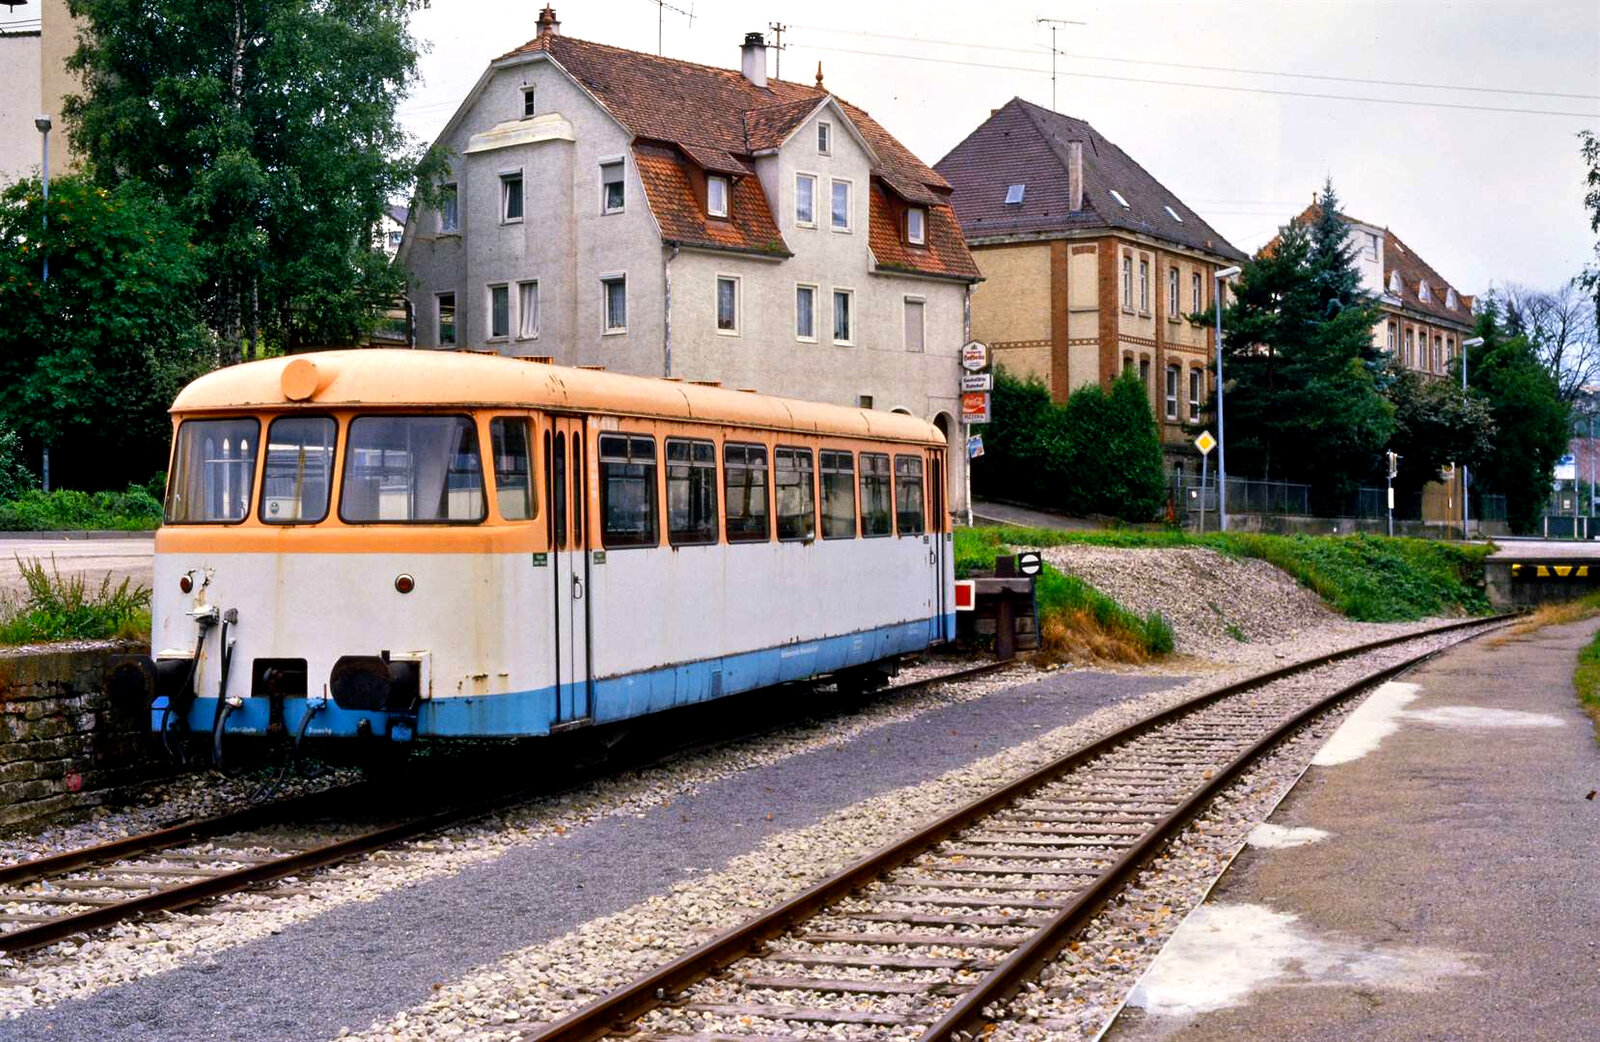 Bahnhof Weissach mit MAN-Schienenbus VM 110, der auf einem Nebengleis abgestellt war, und dem einige Zeit danach ein Motor eingebaut wurde